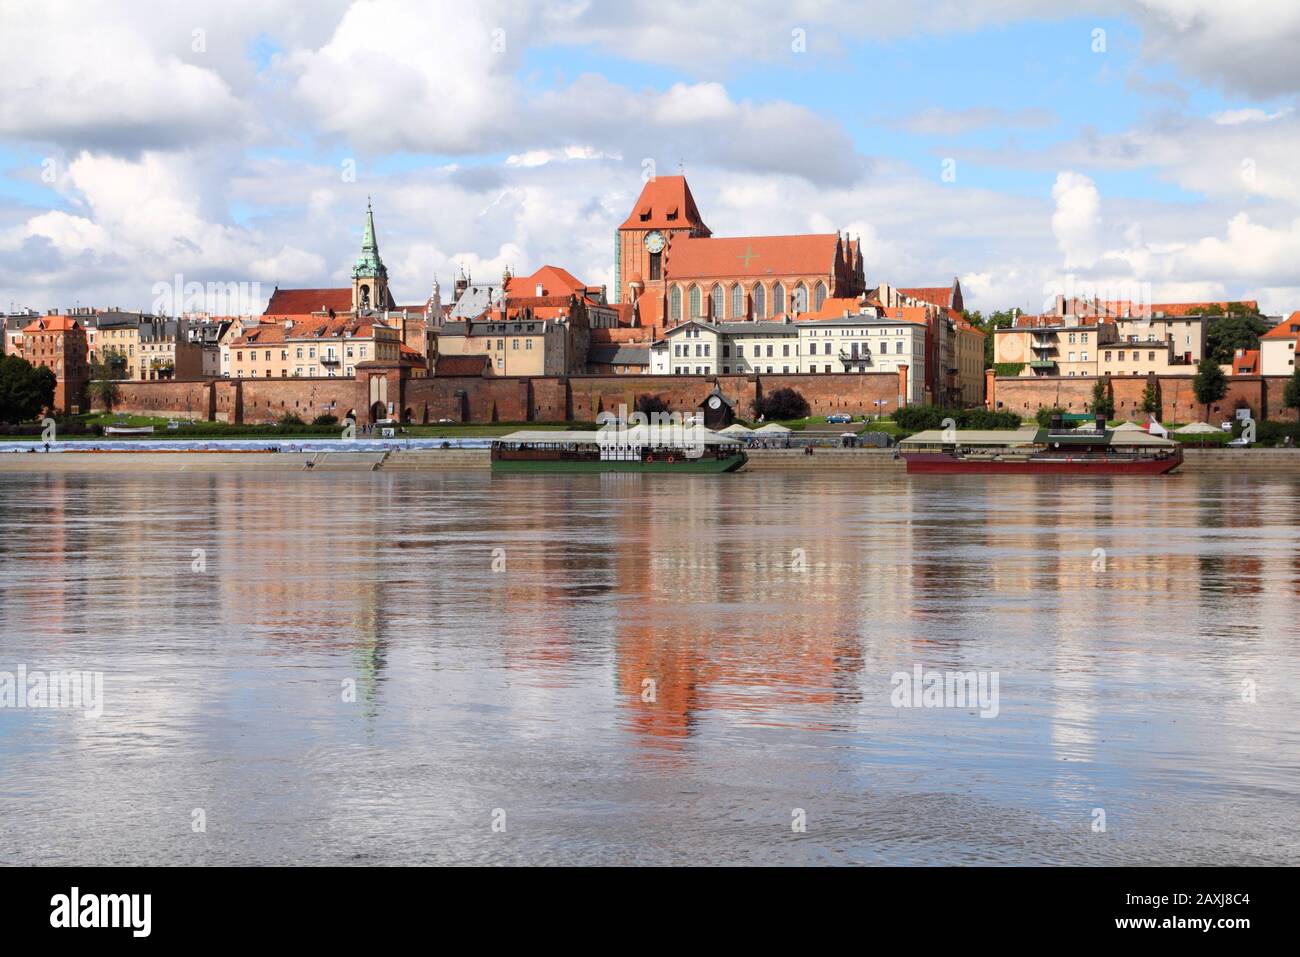 Pologne - Torun, ville divisée par la rivière Vistule entre occidentale et Kuyavia régions. La vieille ville médiévale est un UNESCO World Heritage Site. Banque D'Images